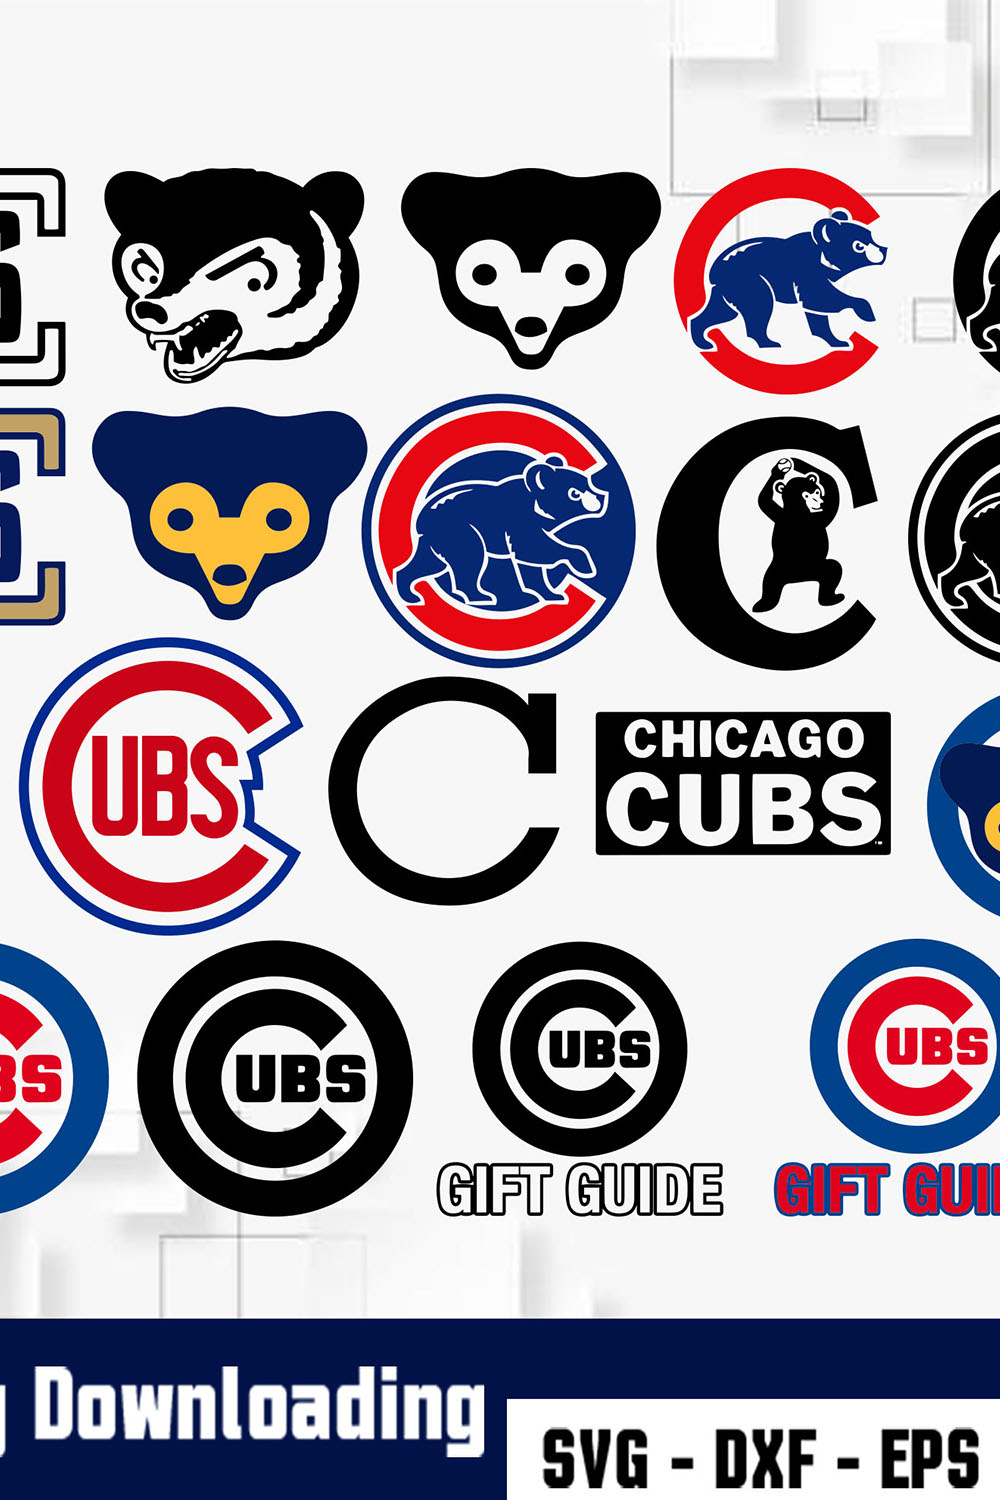 Chicago Cubs Logo SVG pinterest image.